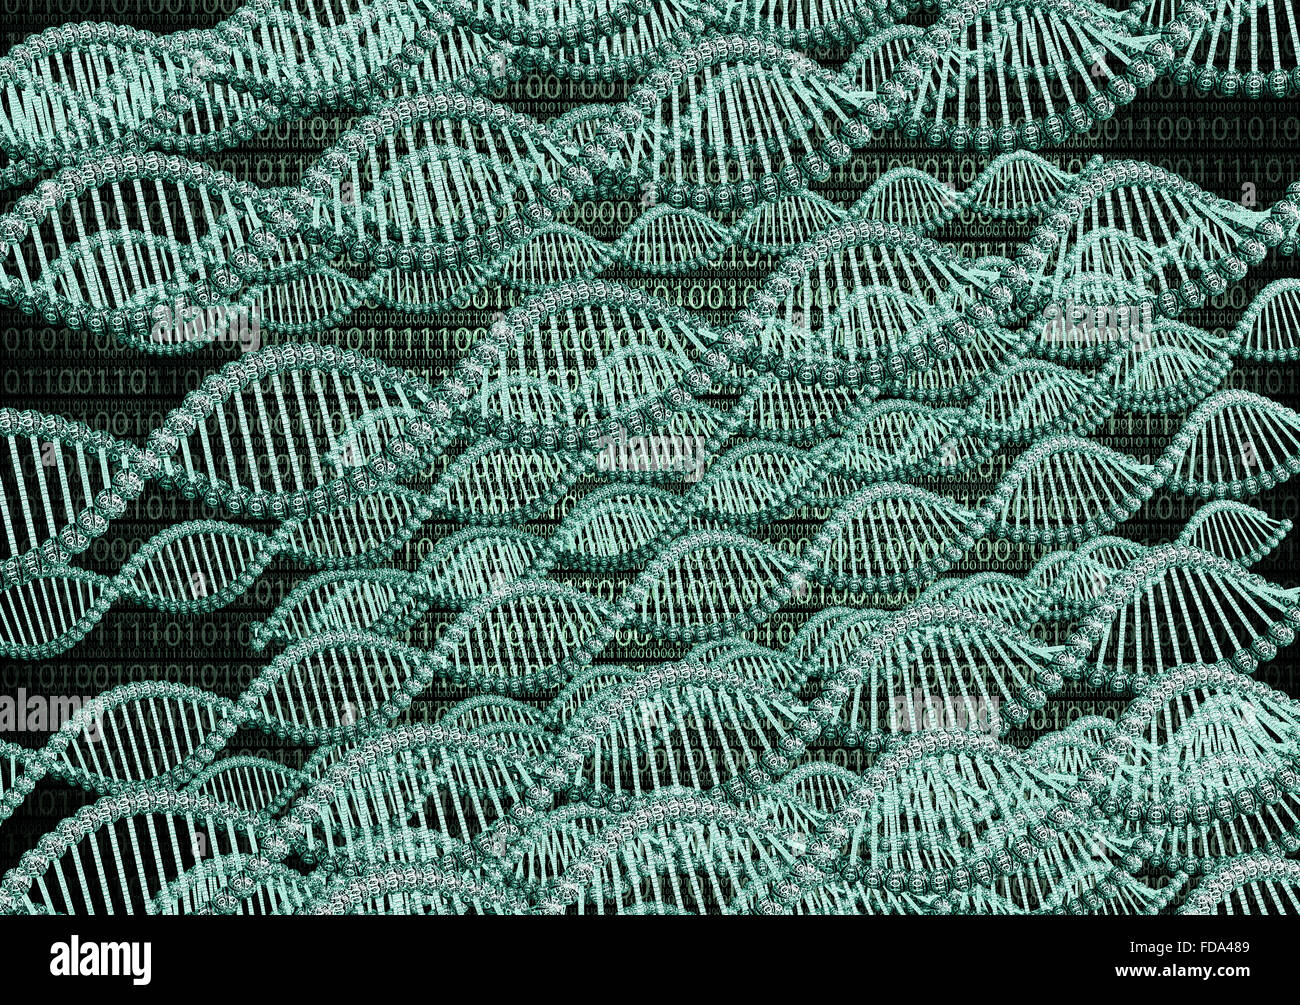 Doppel-Helix Dna aus binären Computercode gemacht Stockfoto